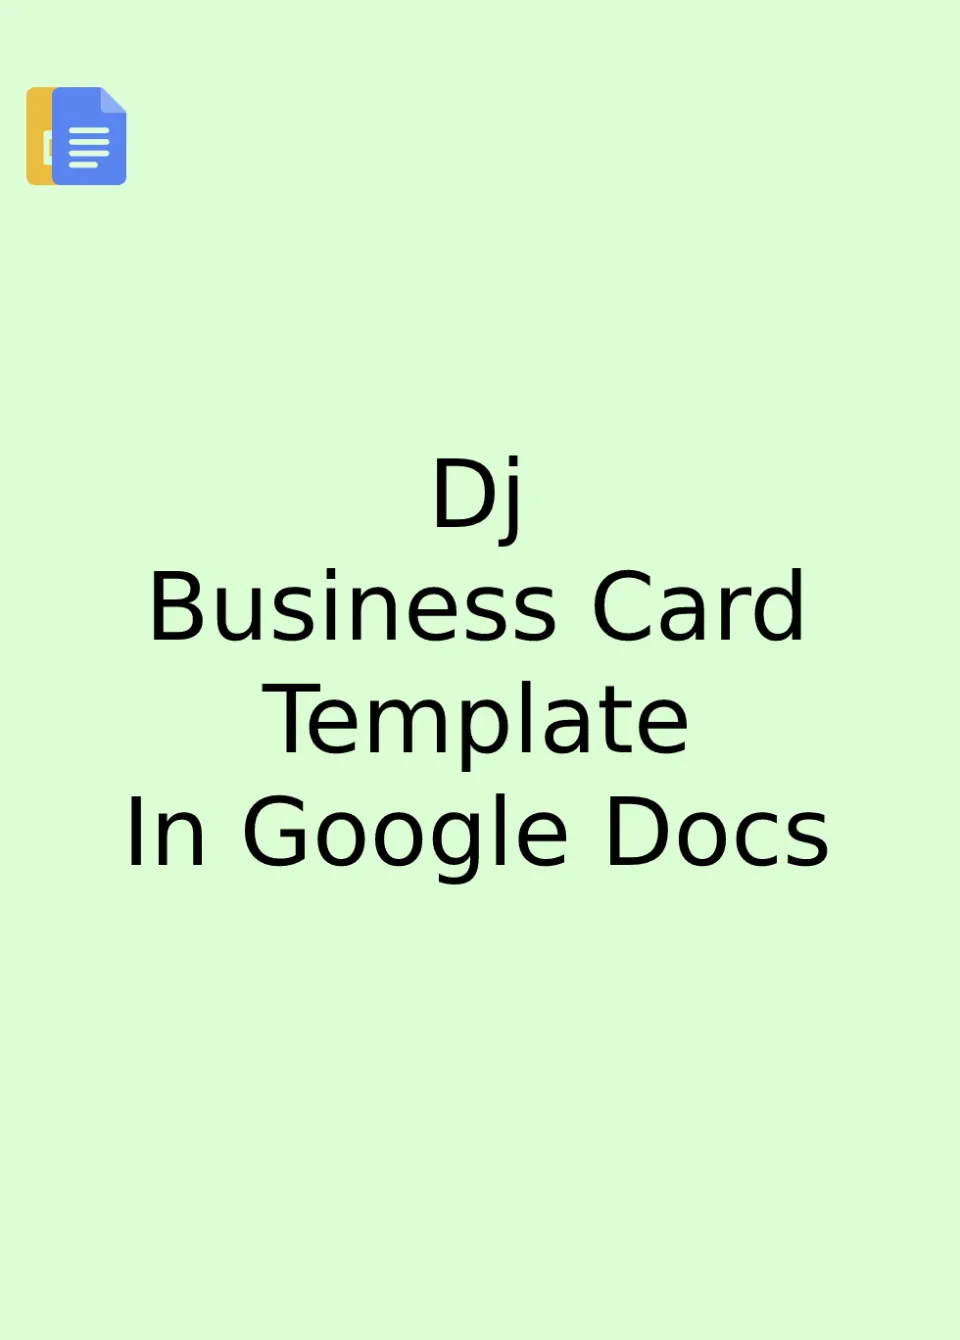 Dj Business Card Template Google Docs